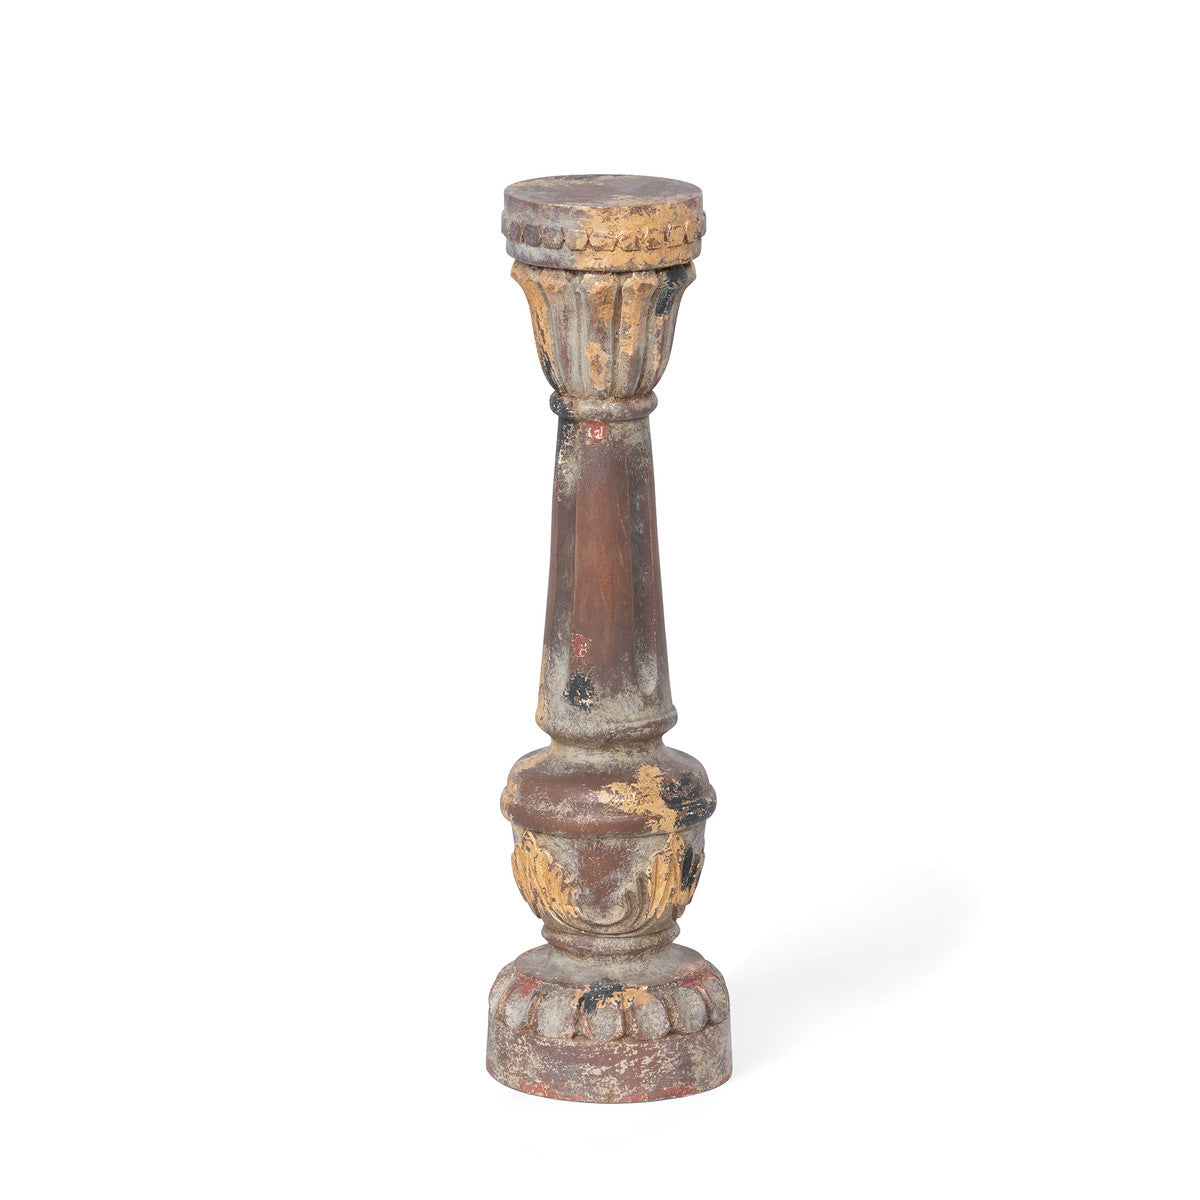 Delgado Carved Wood Candle Holder - 16"